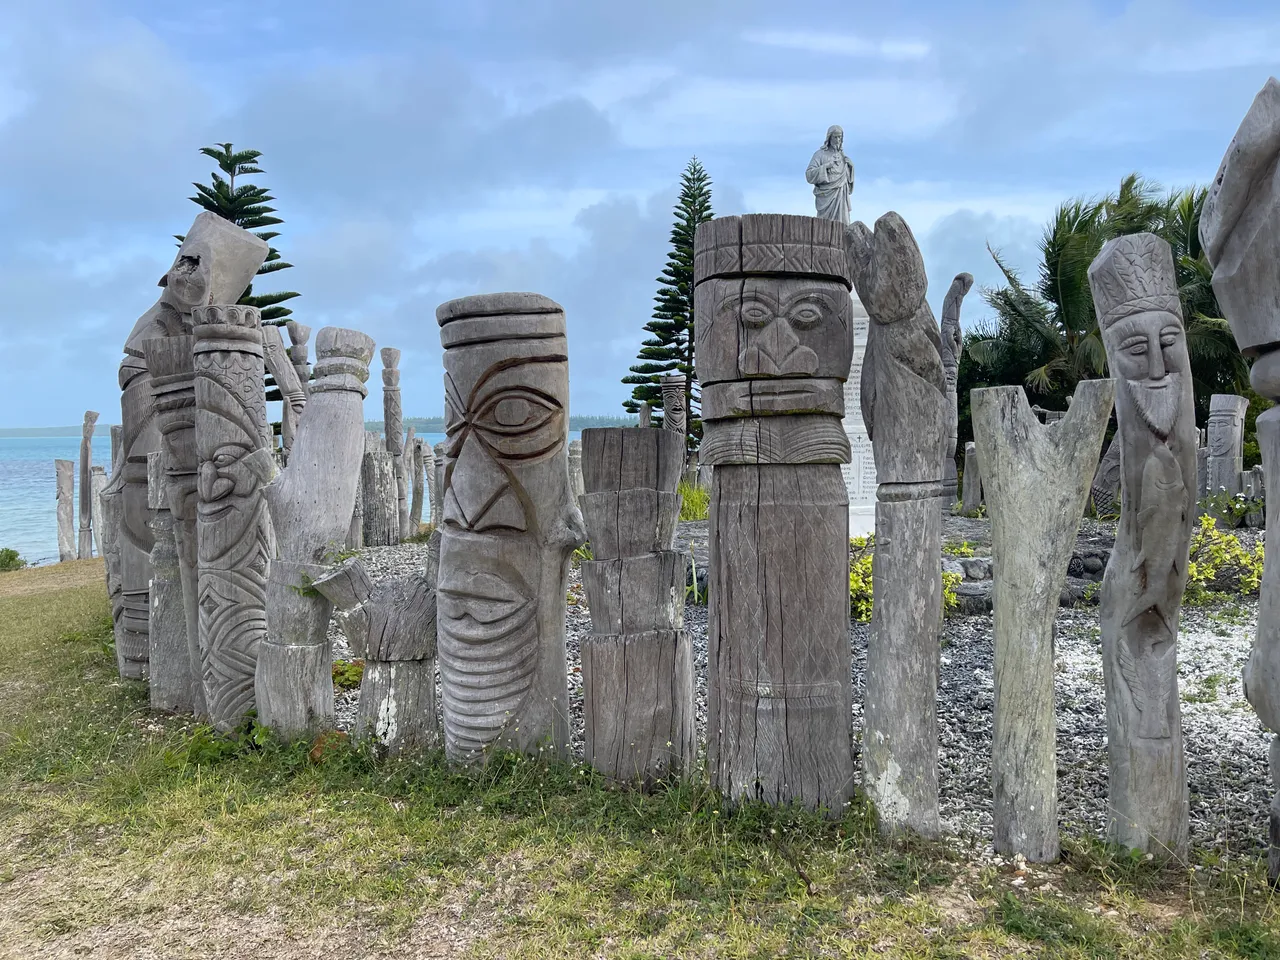 Tiki sculptures